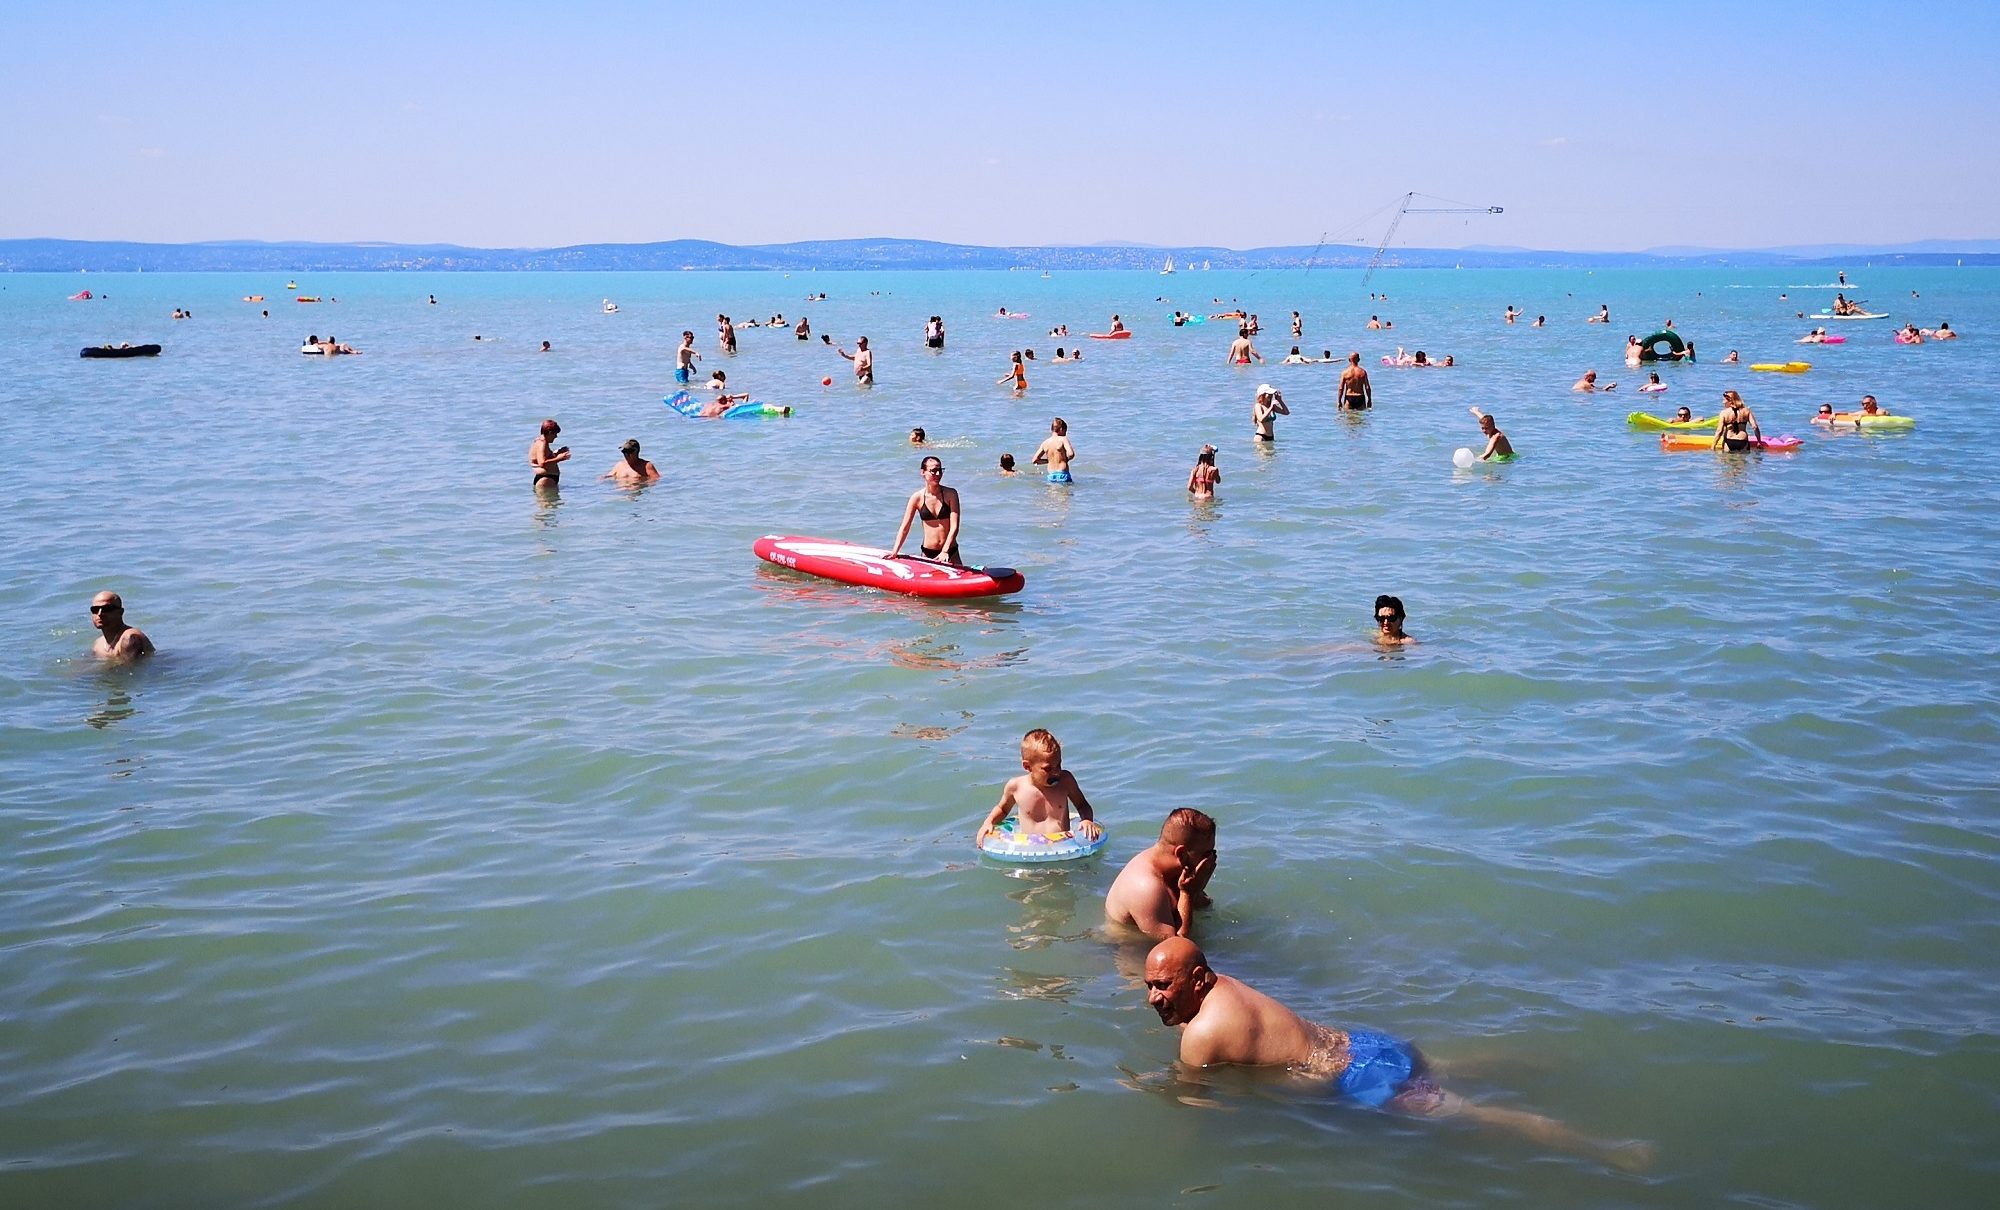 Ismerd meg a Balaton marásvonalát, a legnagyobb veszélyt a vízben